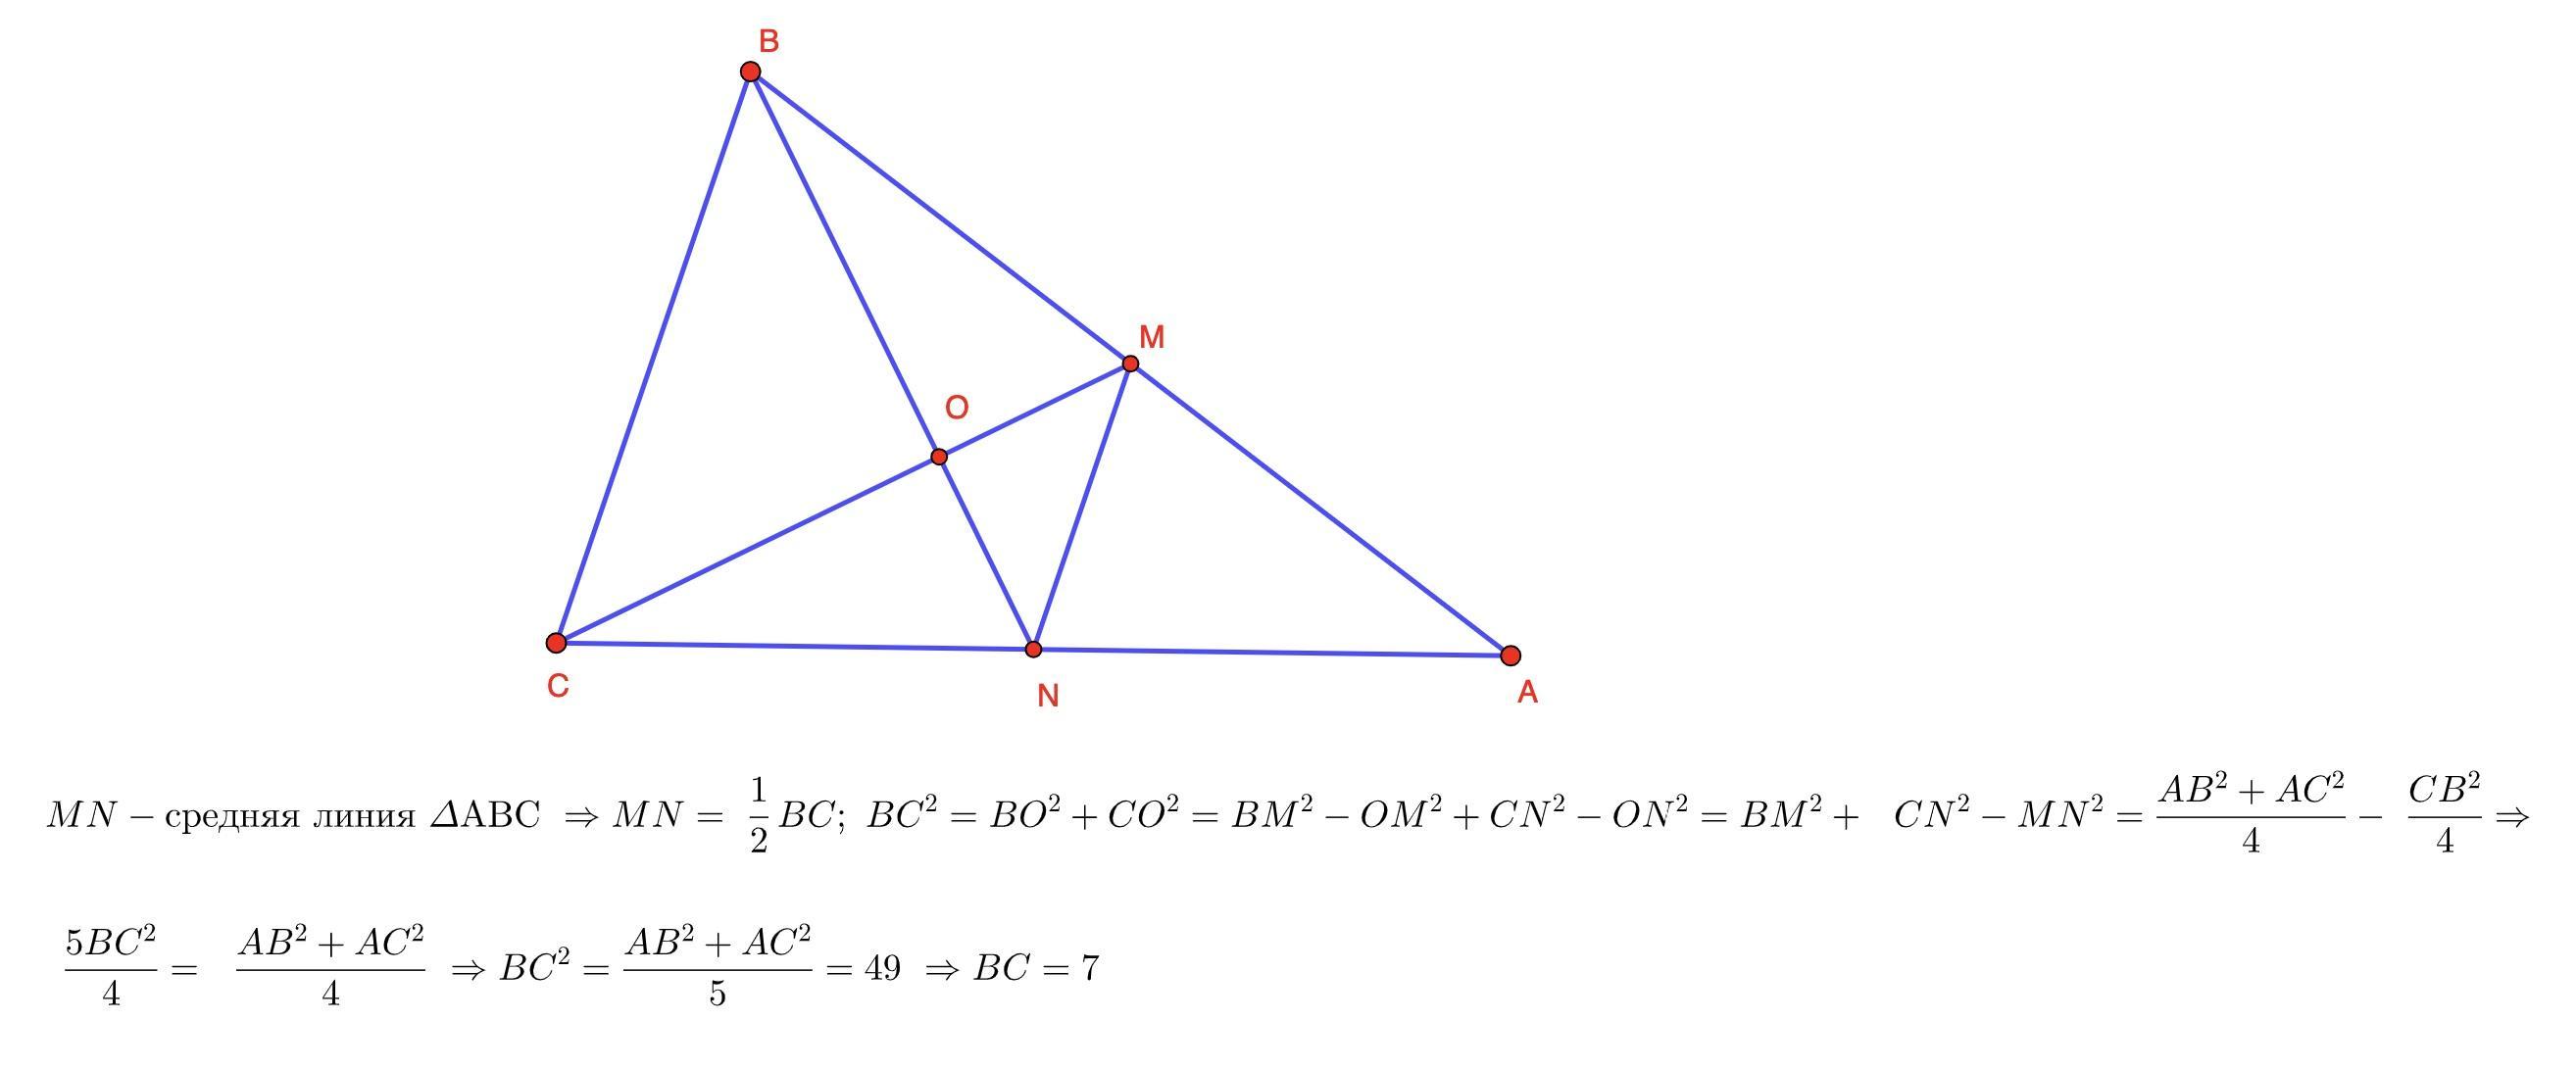 В равностороннем треугольнике abc провели медиану am. На стороне BC треугольника ABC выбрана точка d. Рисунок треугольника АВС С медианой ВМ. В треугольнике ABC BM Медиана и BH высота. BM перпендикулярно BC BM перпендикулярно ab.